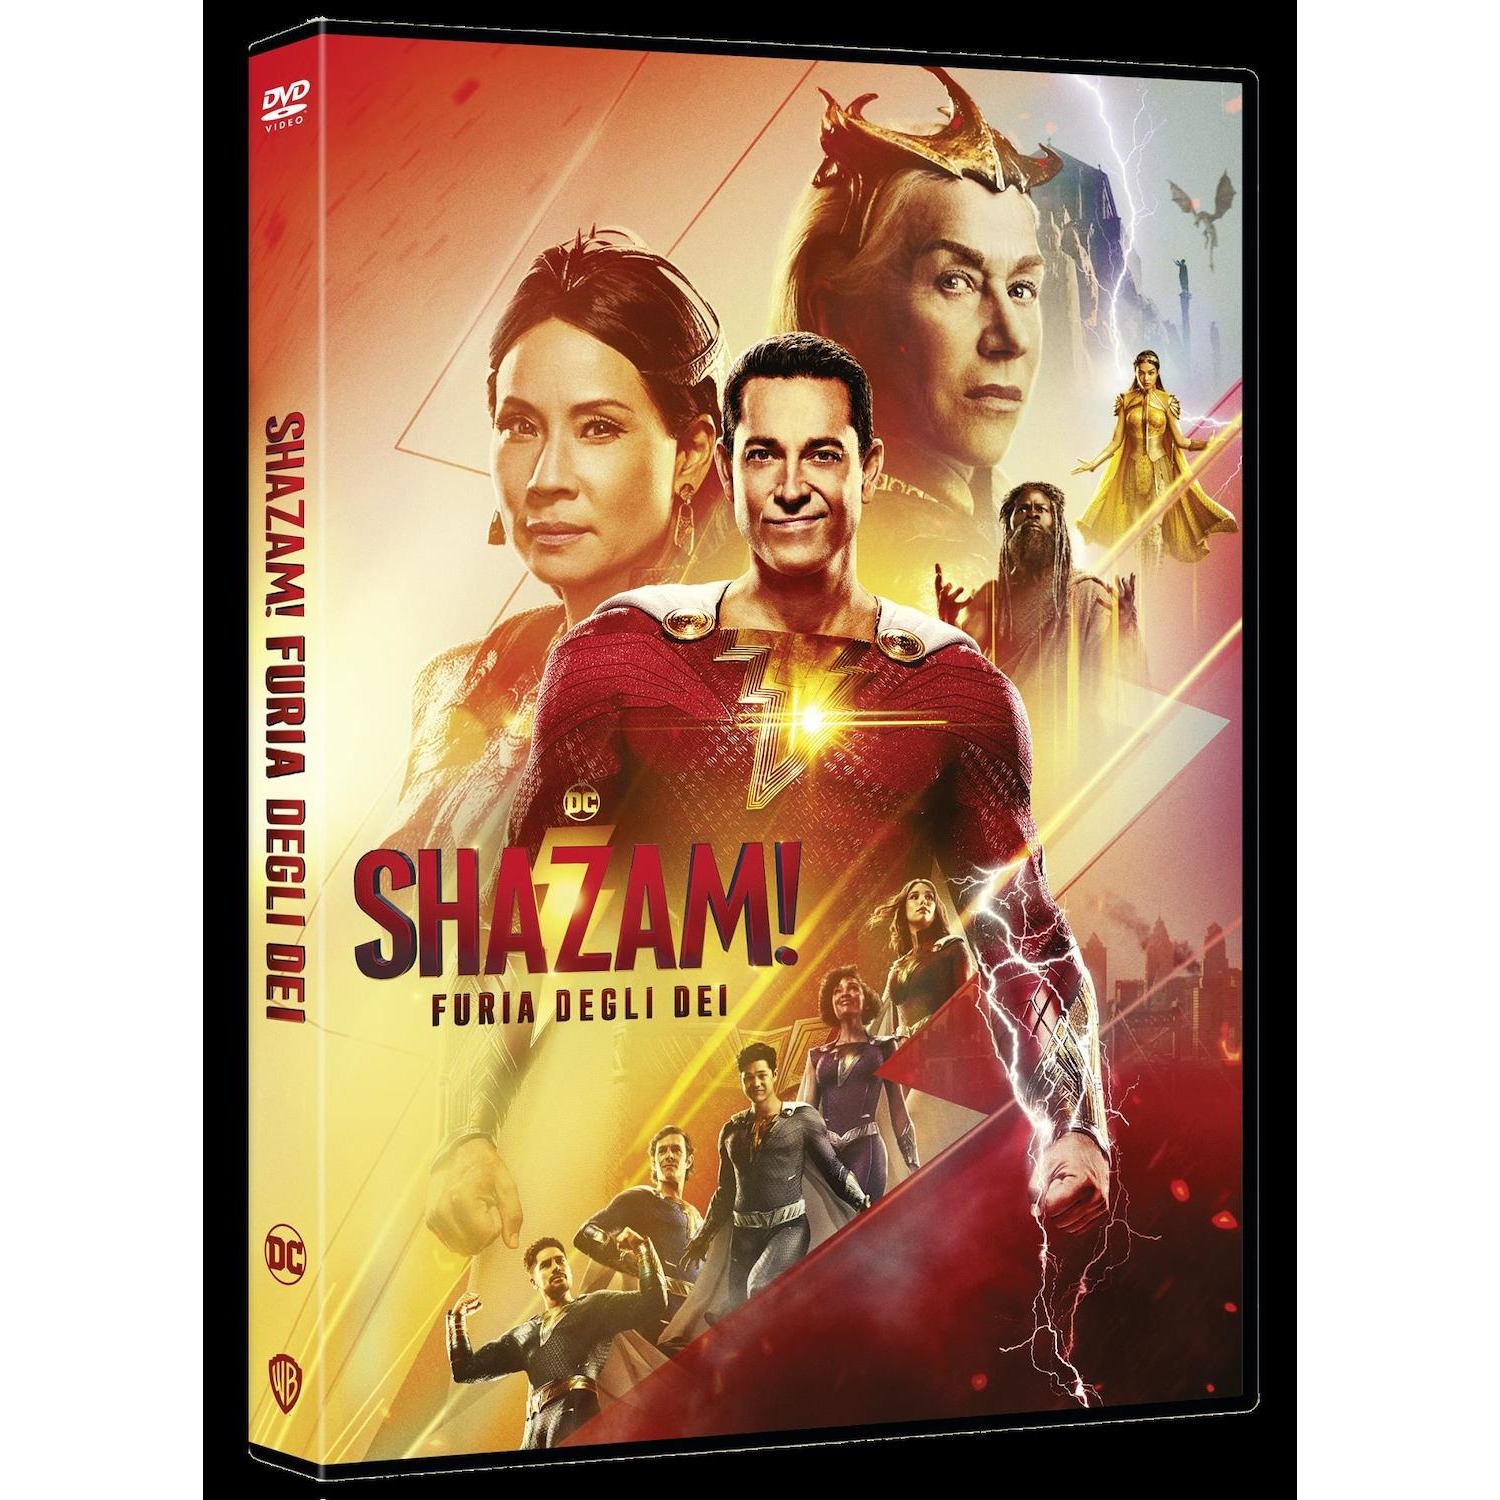 Immagine per DVD Shazam! 2 - Furia degli Dei da DIMOStore